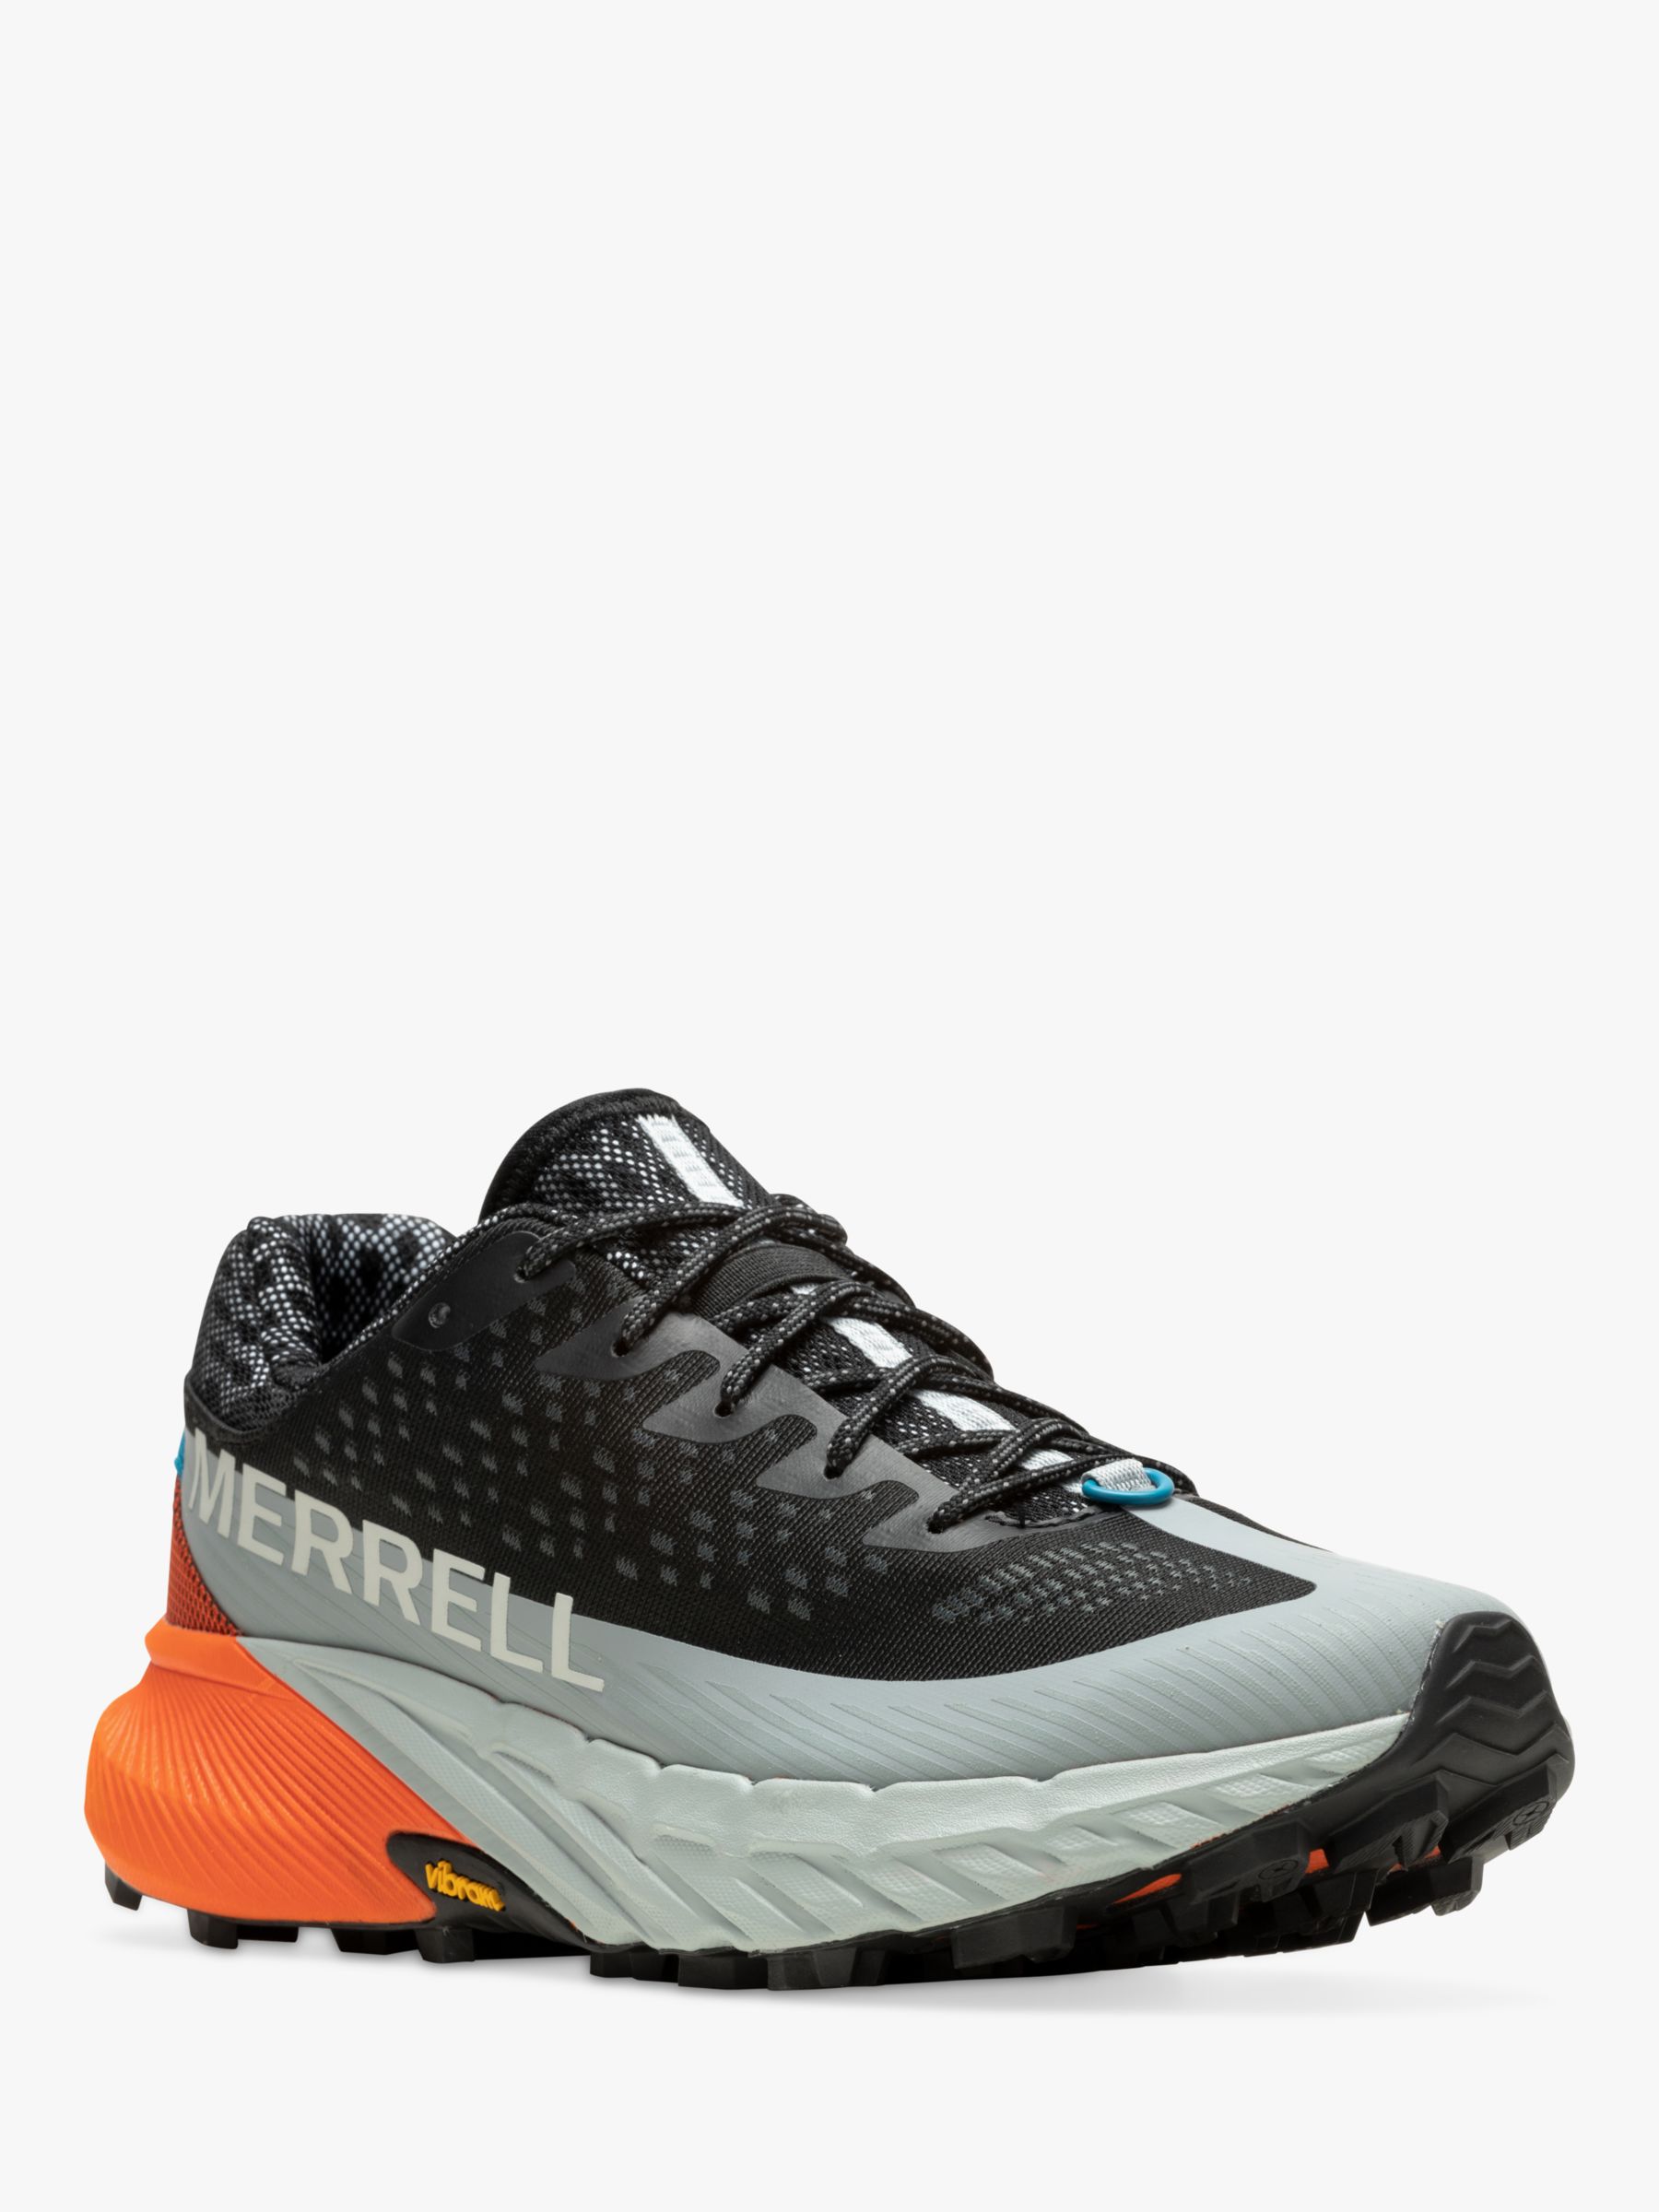 Merrell Agility Peak 5 Men's Trail Running Shoes, Black/Tangerine, 9